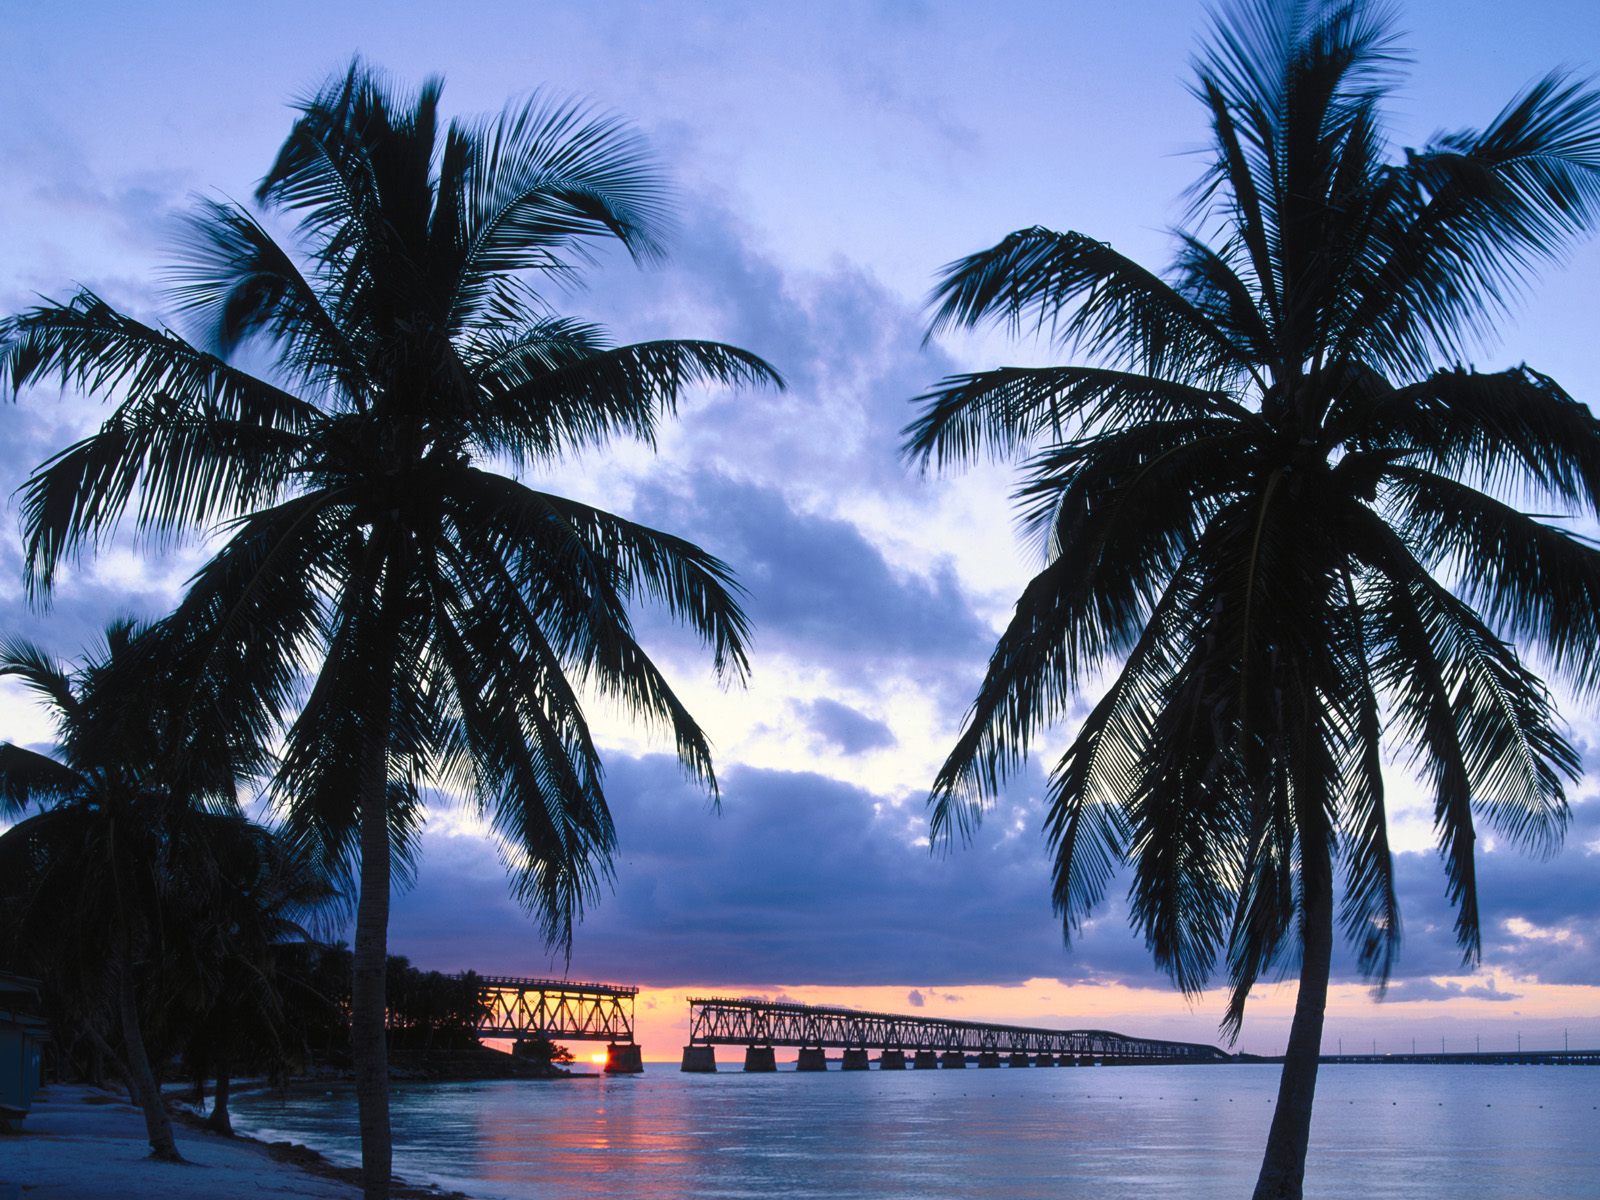 Tải miễn phí Florida Keys - bộ ảnh đẹp chất lượng cao với những hình ảnh nổi bật nhất của những địa danh bên bờ biển. Hãy tạo ngay cho mình bộ sưu tập ảnh đẹp và đầy cảm hứng về Florida Keys mà không tốn bất kỳ chi phí nào!